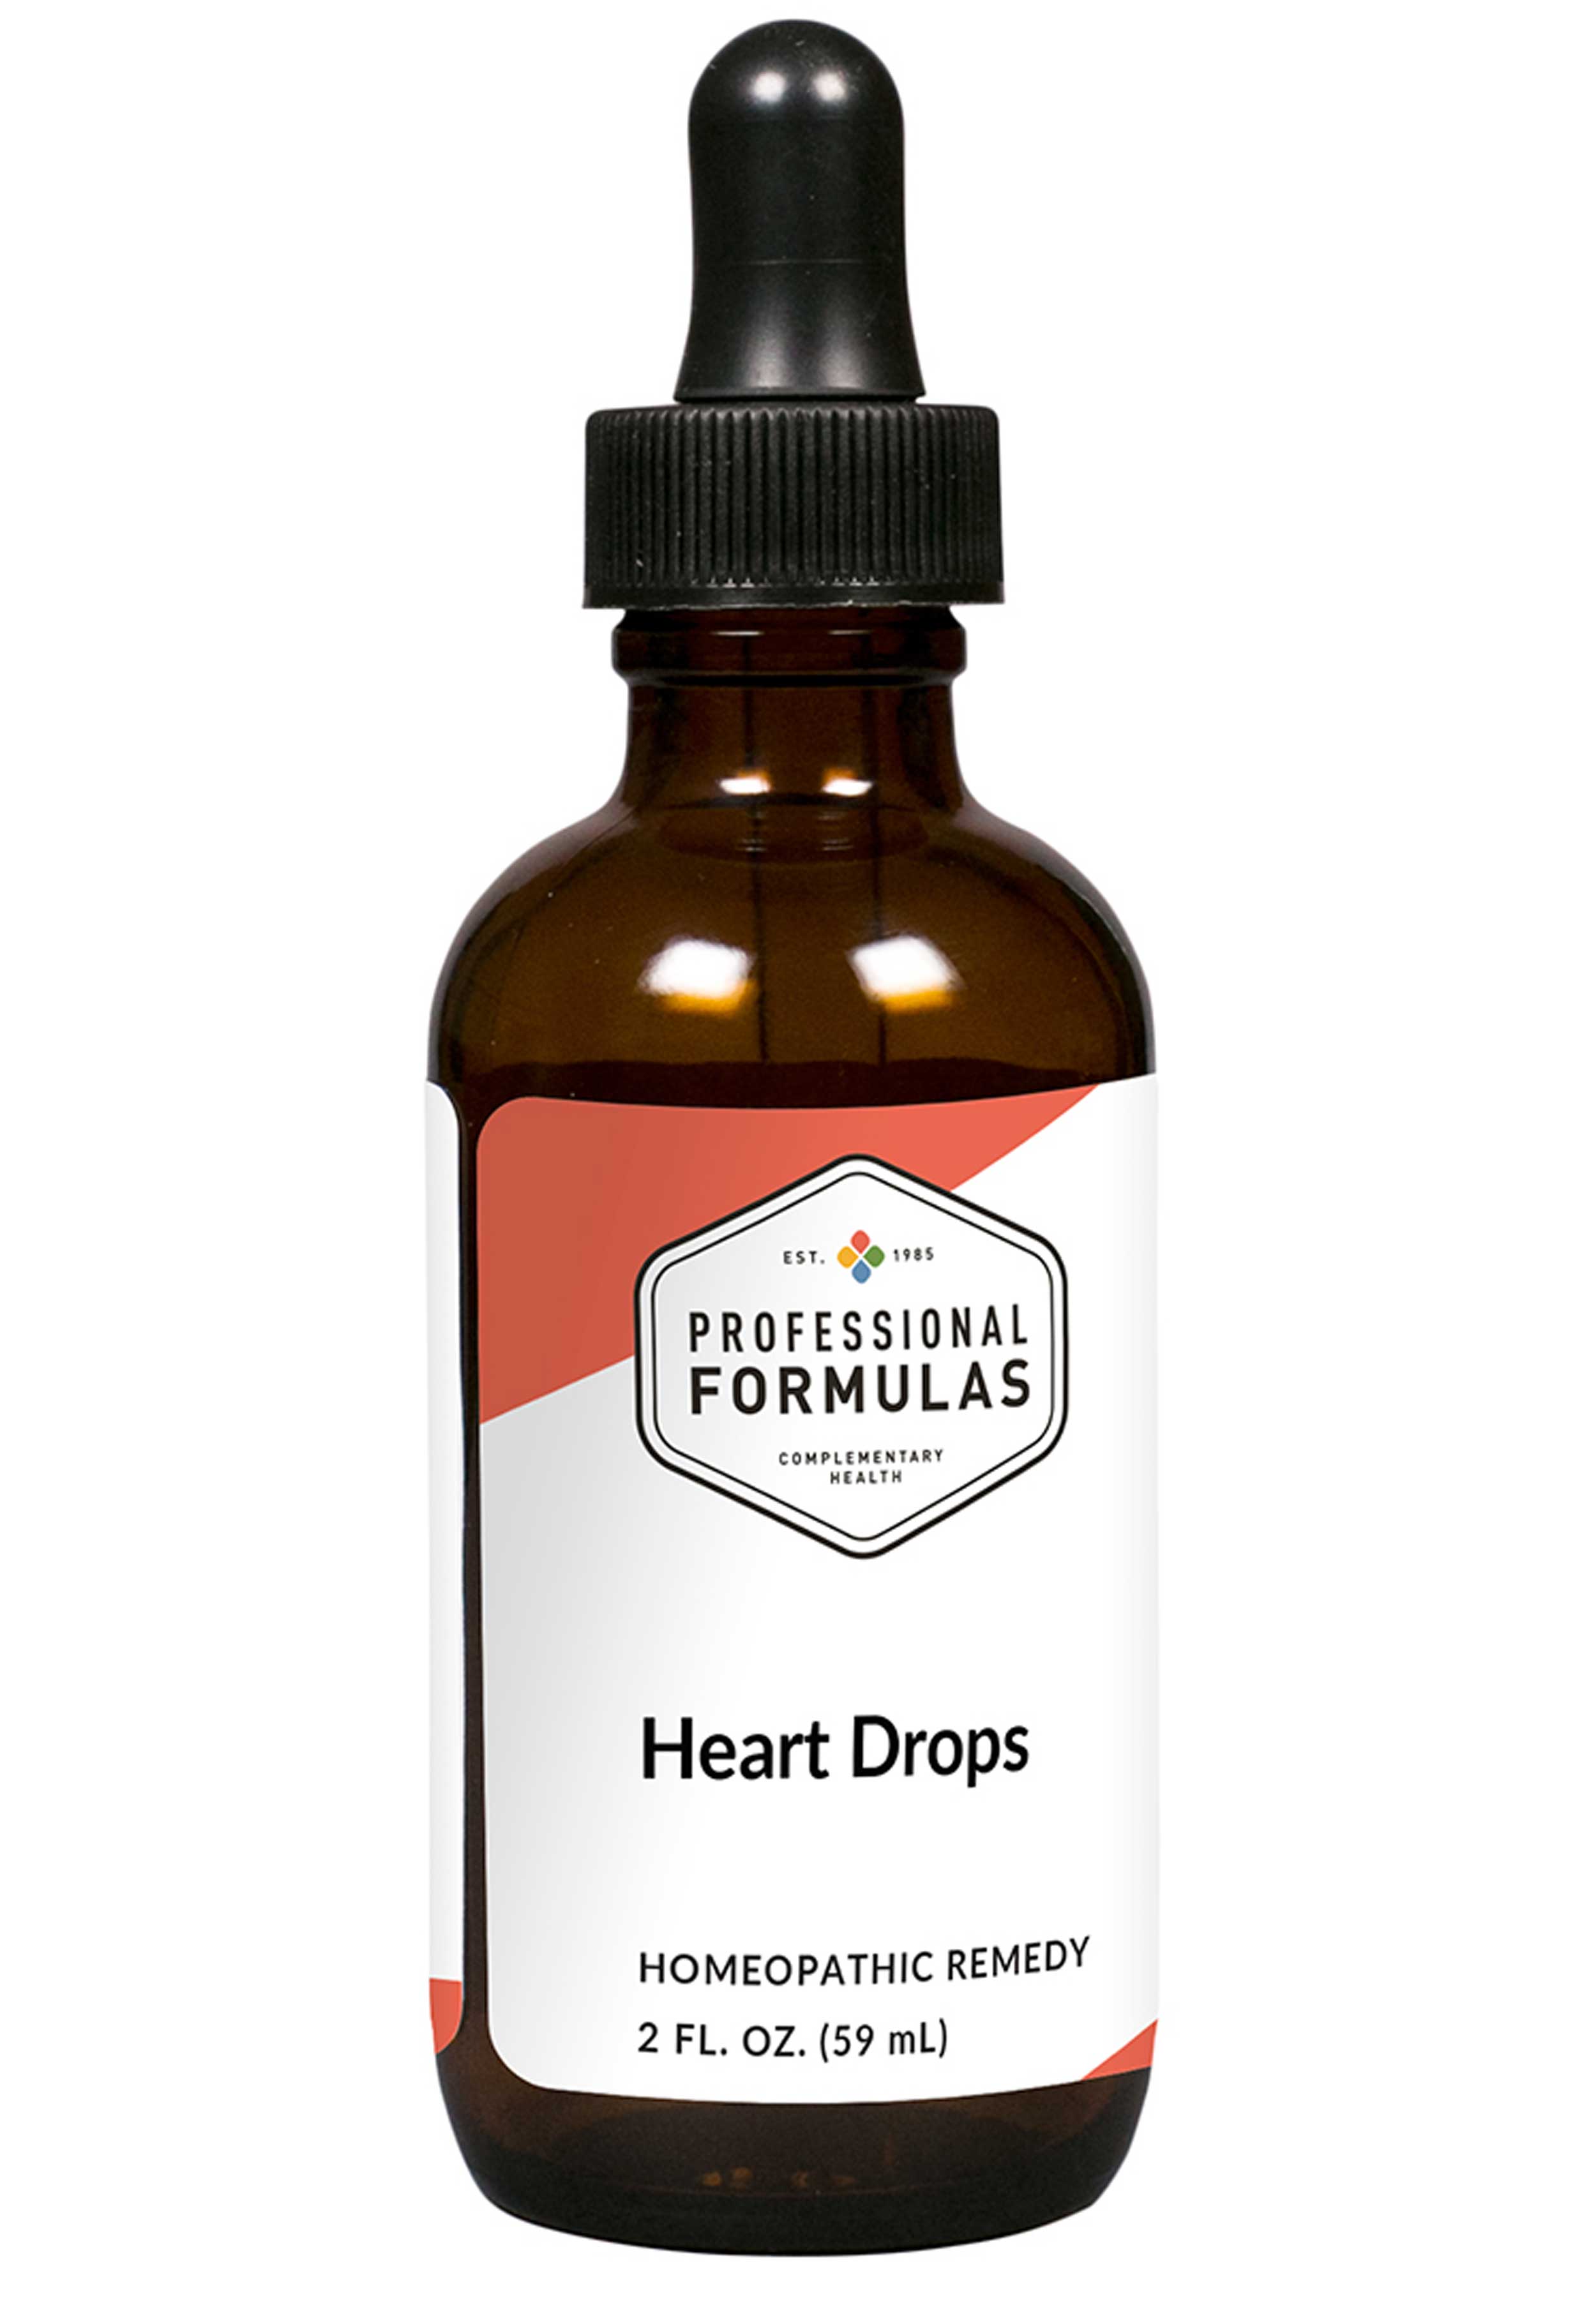 Professional Formulas Heart Drops